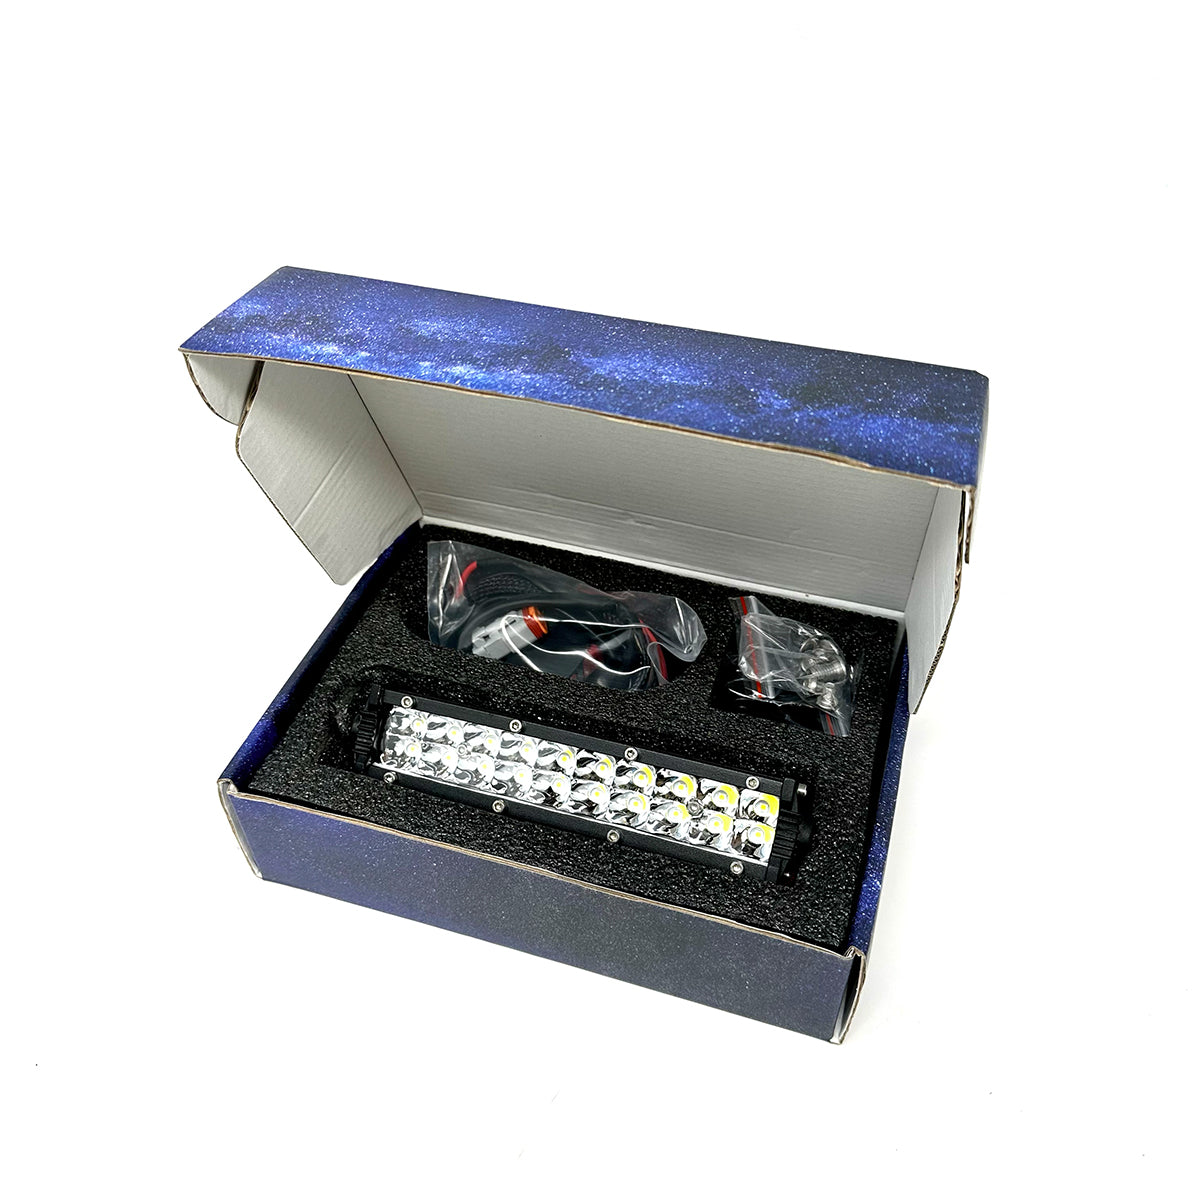 LED Bar Auto cu 2 faze (faza scurta/faza lunga) 252W/12V-24V, 21420 Lumeni,  lungime 51 cm, Leduri CREE